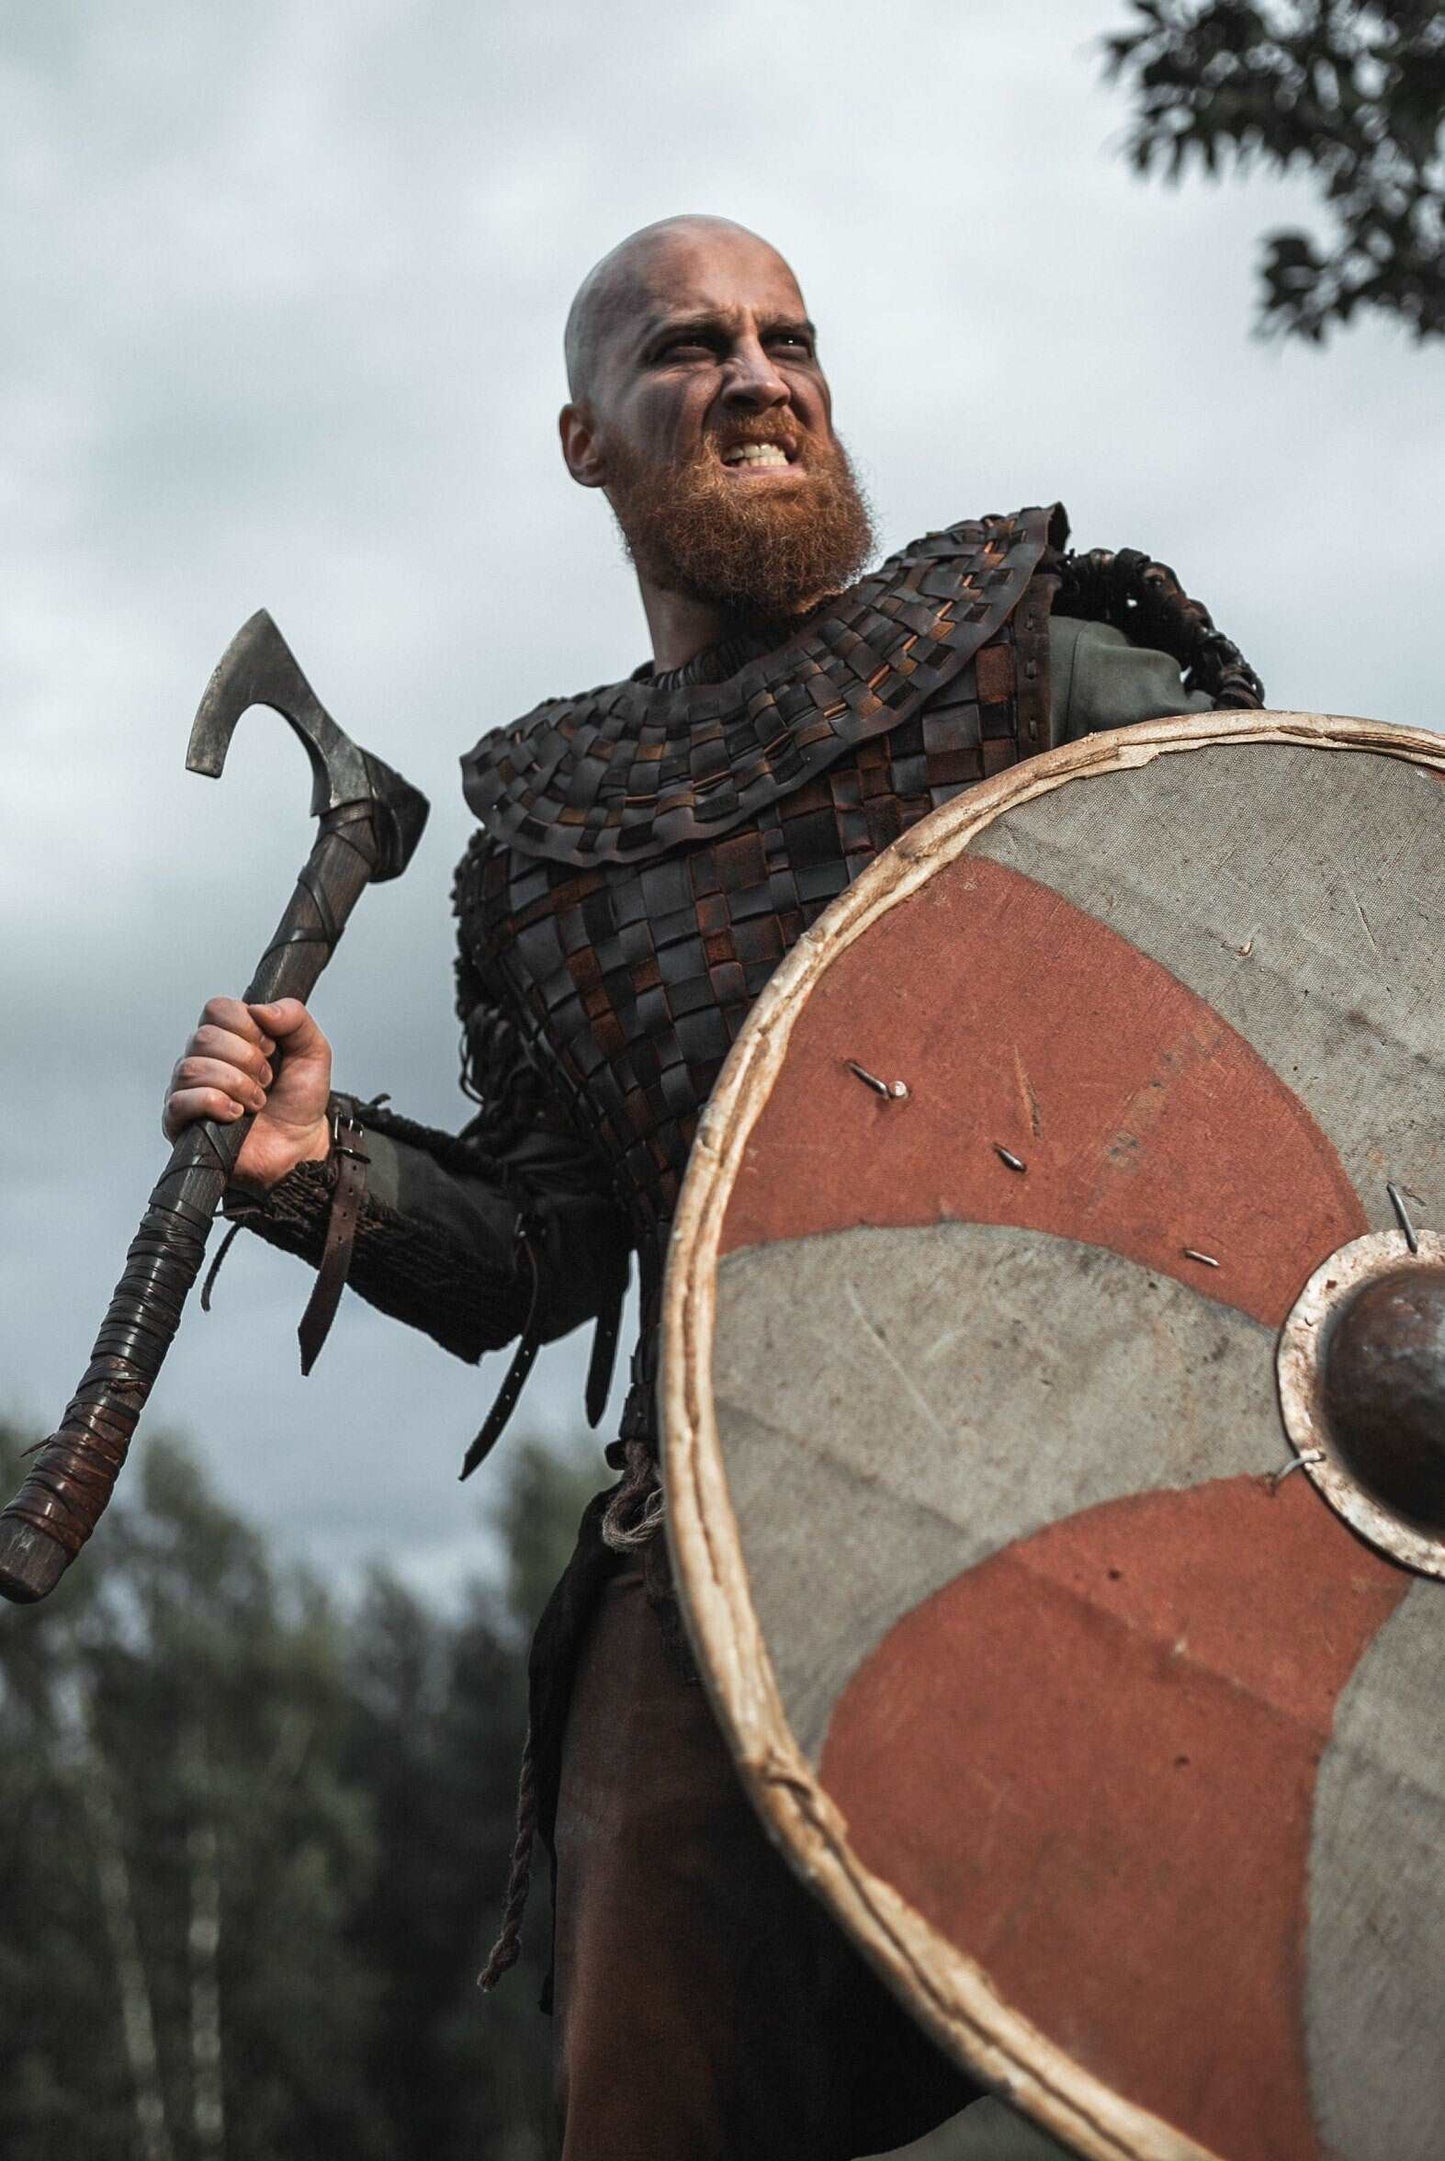 Floki armor (Vikings)